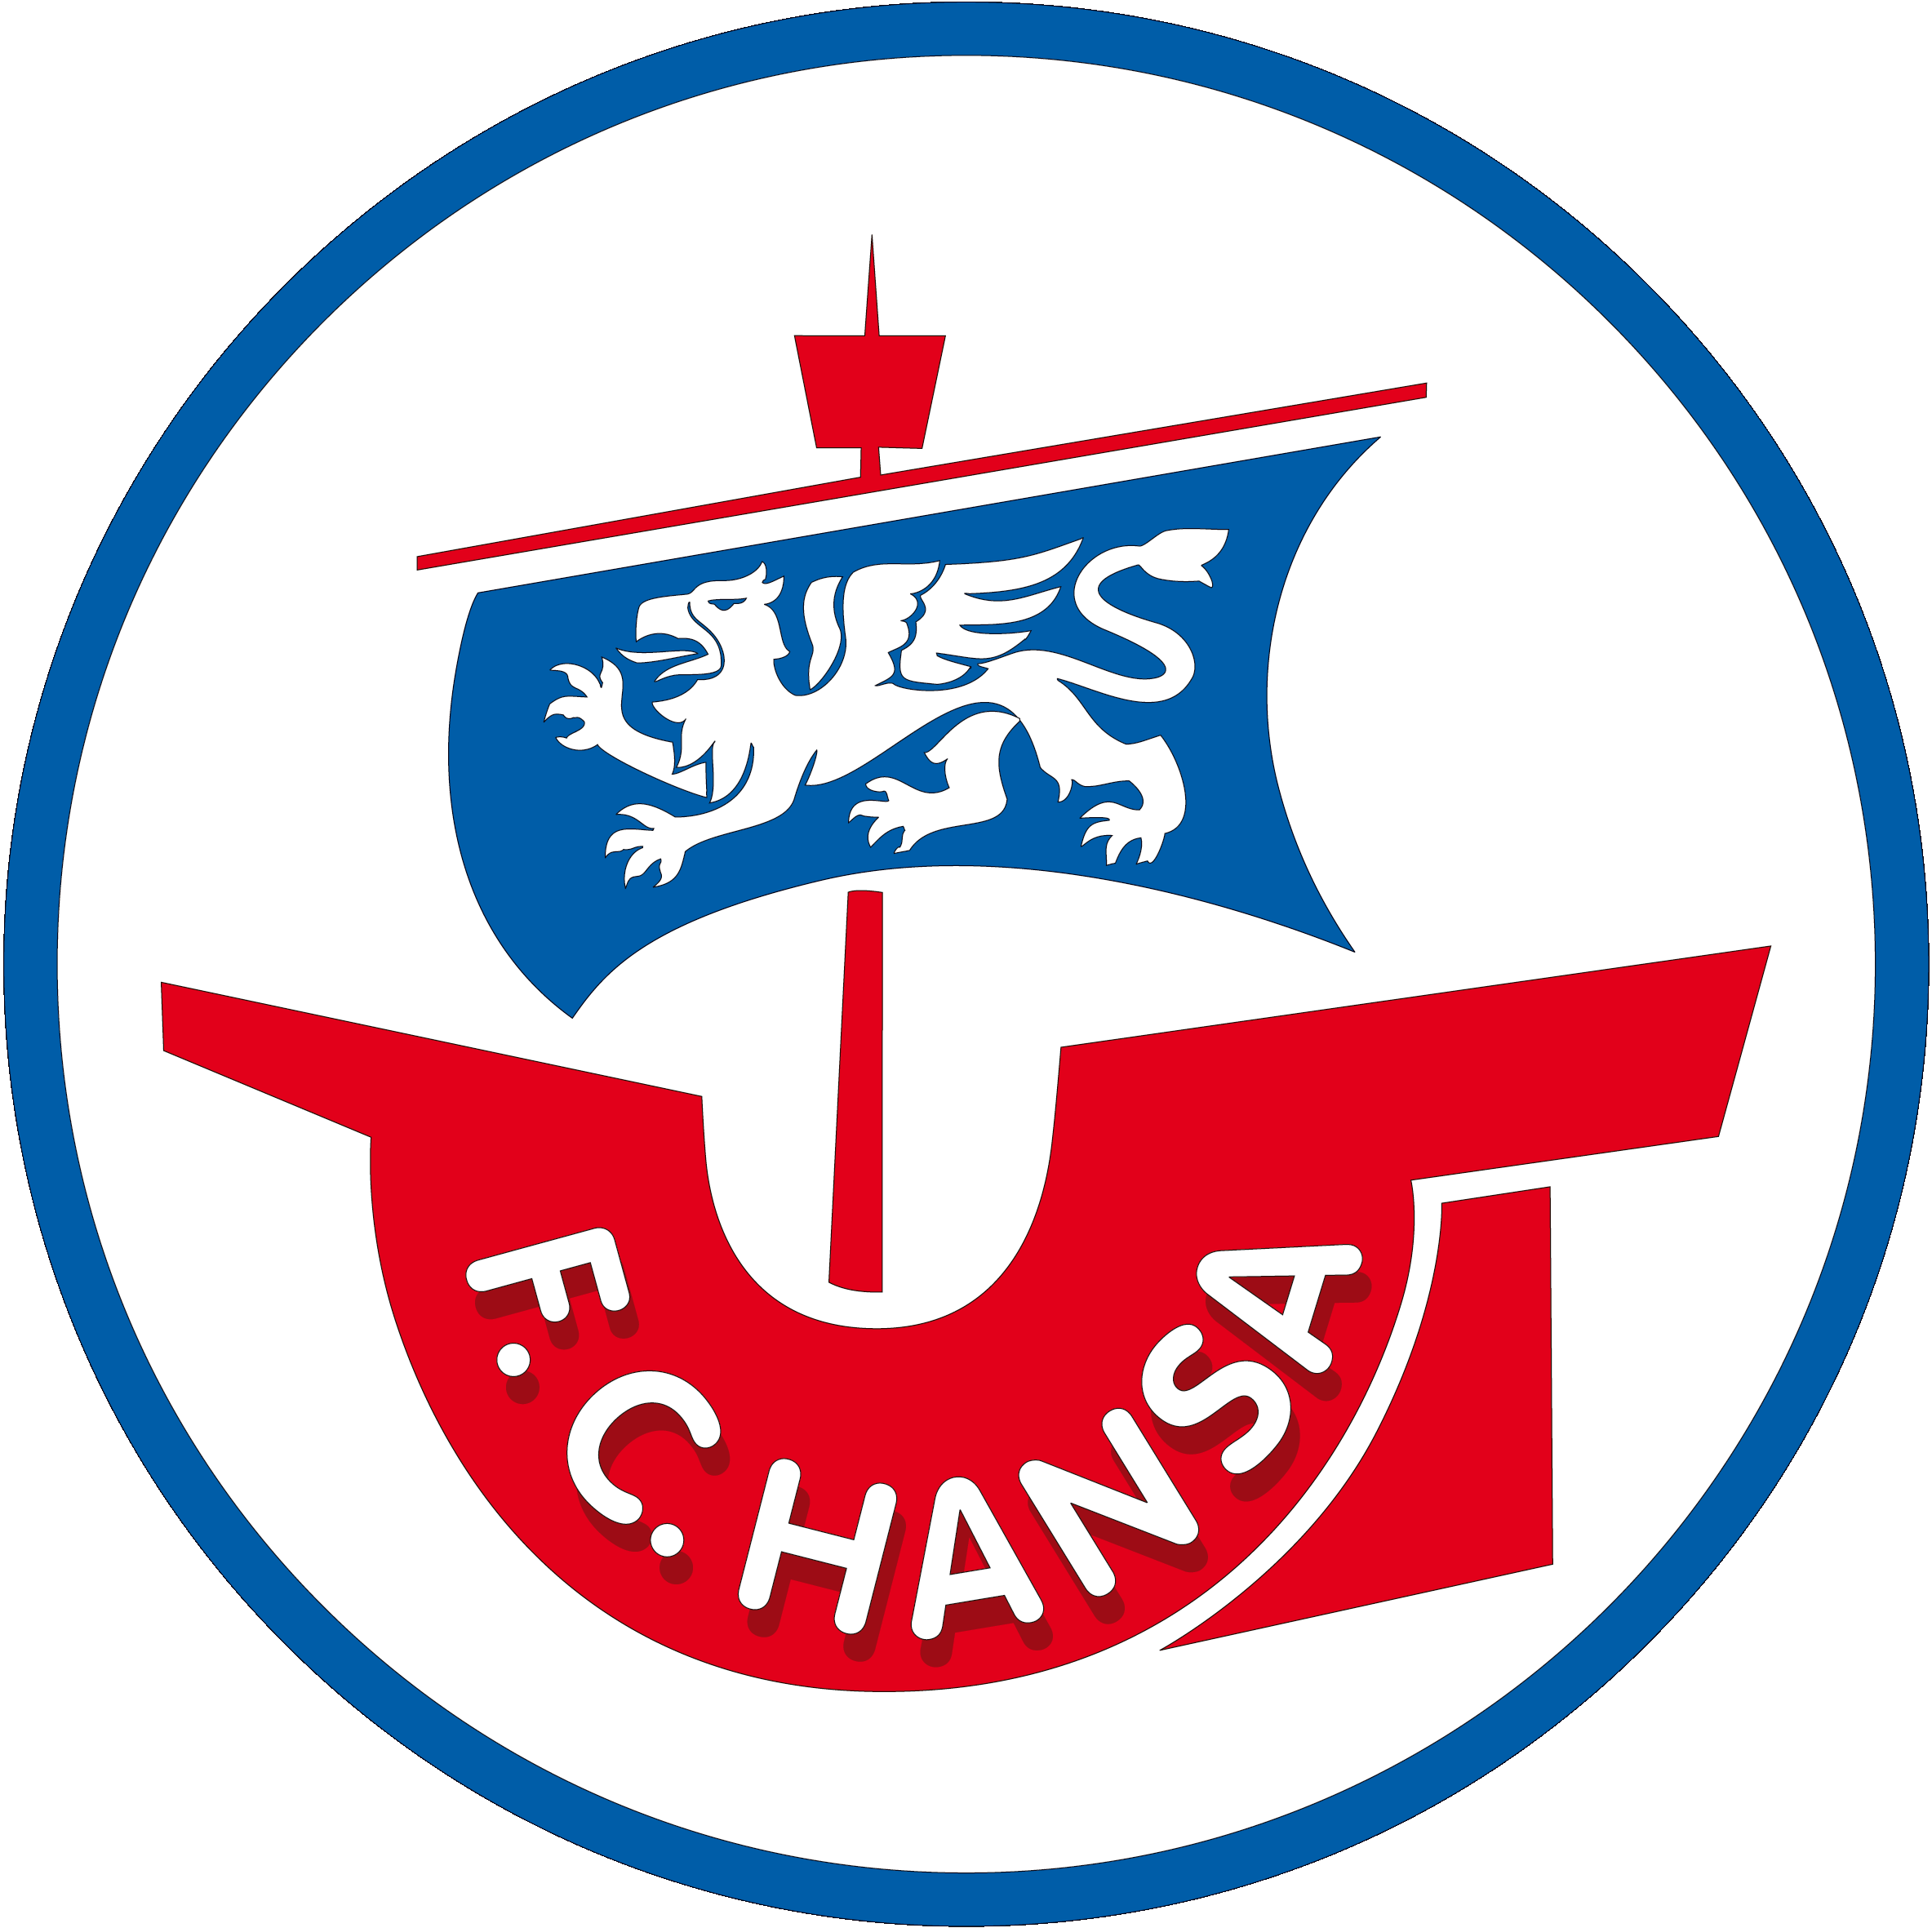 Hansa-Logo